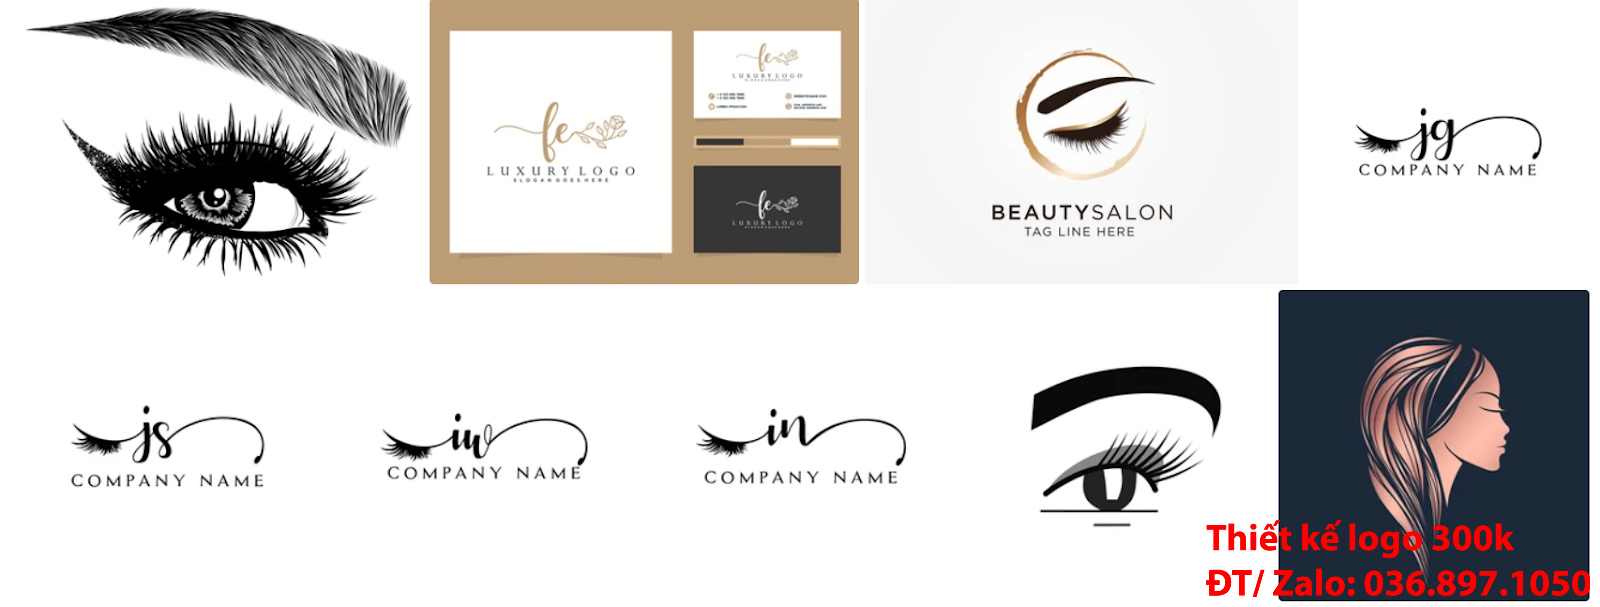 Đơn vị tại Hà nội có nhận Tạo logo thẩm mỹ lông mi mắt sang trọng khác biệt giá rẻ 300k đẹp chuyên nghiệp